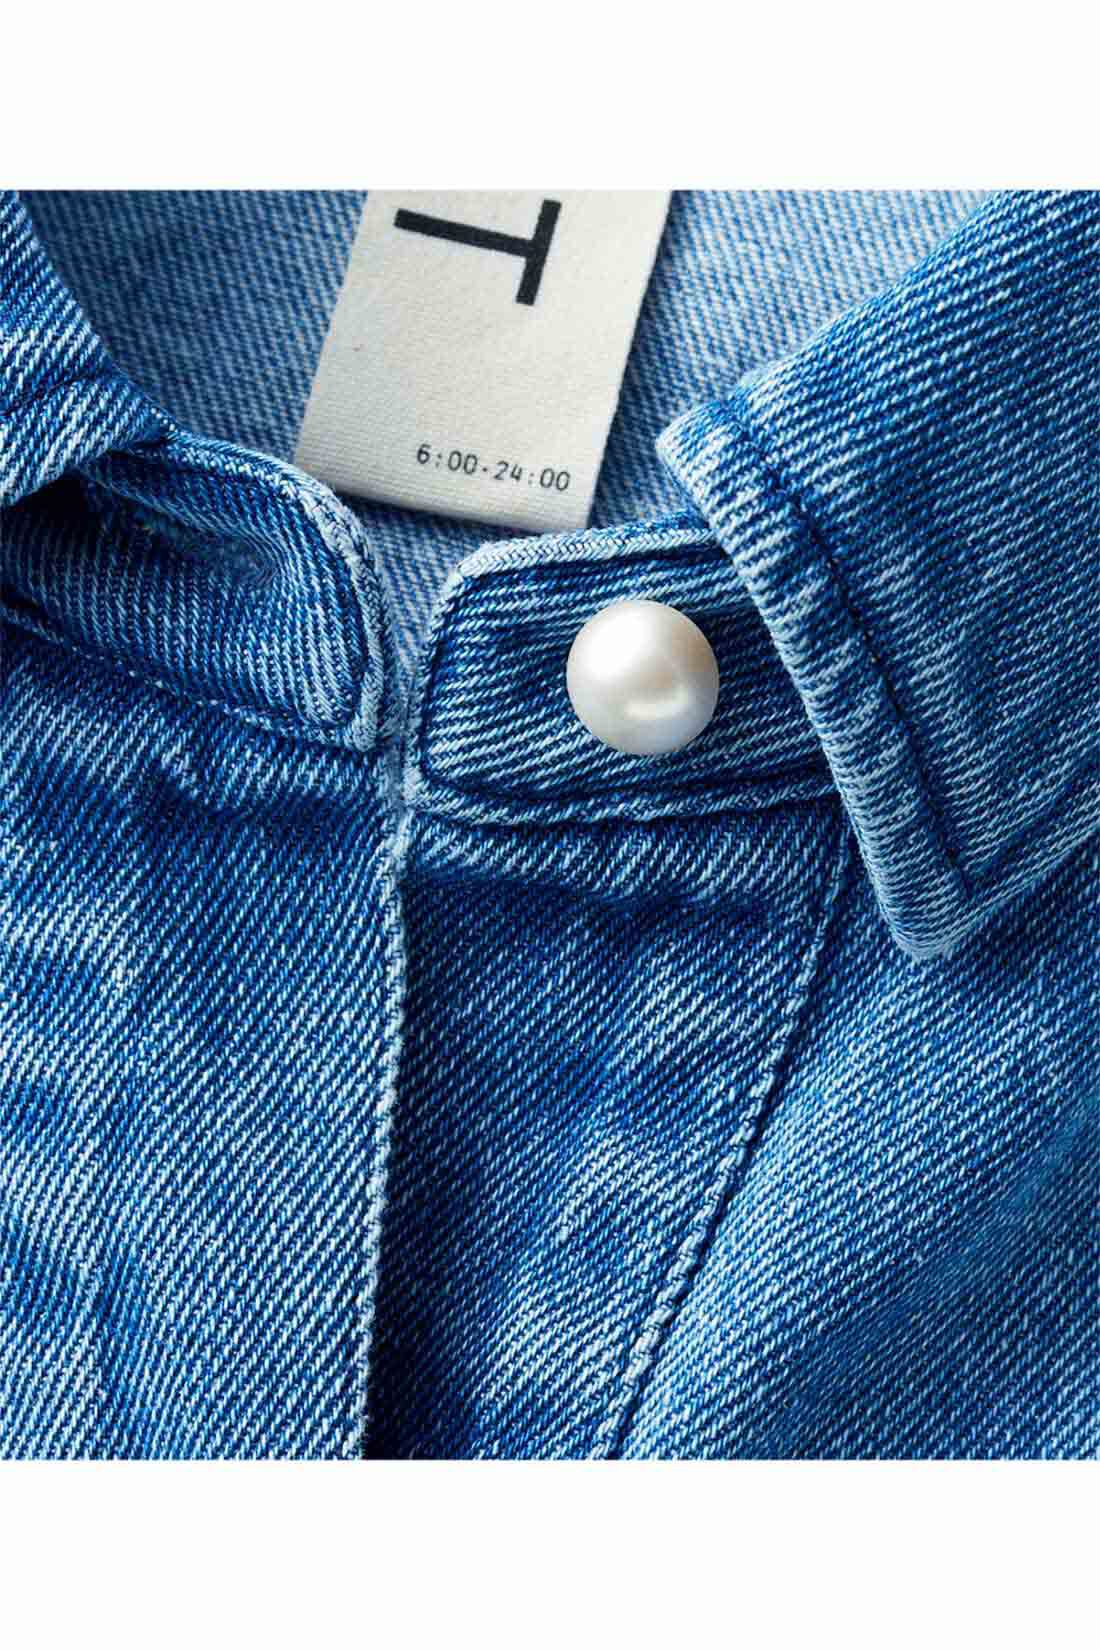 DRECO by IEDIT|【3～10日でお届け】IEDIT[イディット]　ゆるっとオーバーサイズでこなれ感たっぷりな パール調ボタンのデニムシャツ〈ブルー〉|前立てや袖口で輝くパールボタンがつやっと女っぽい表情。